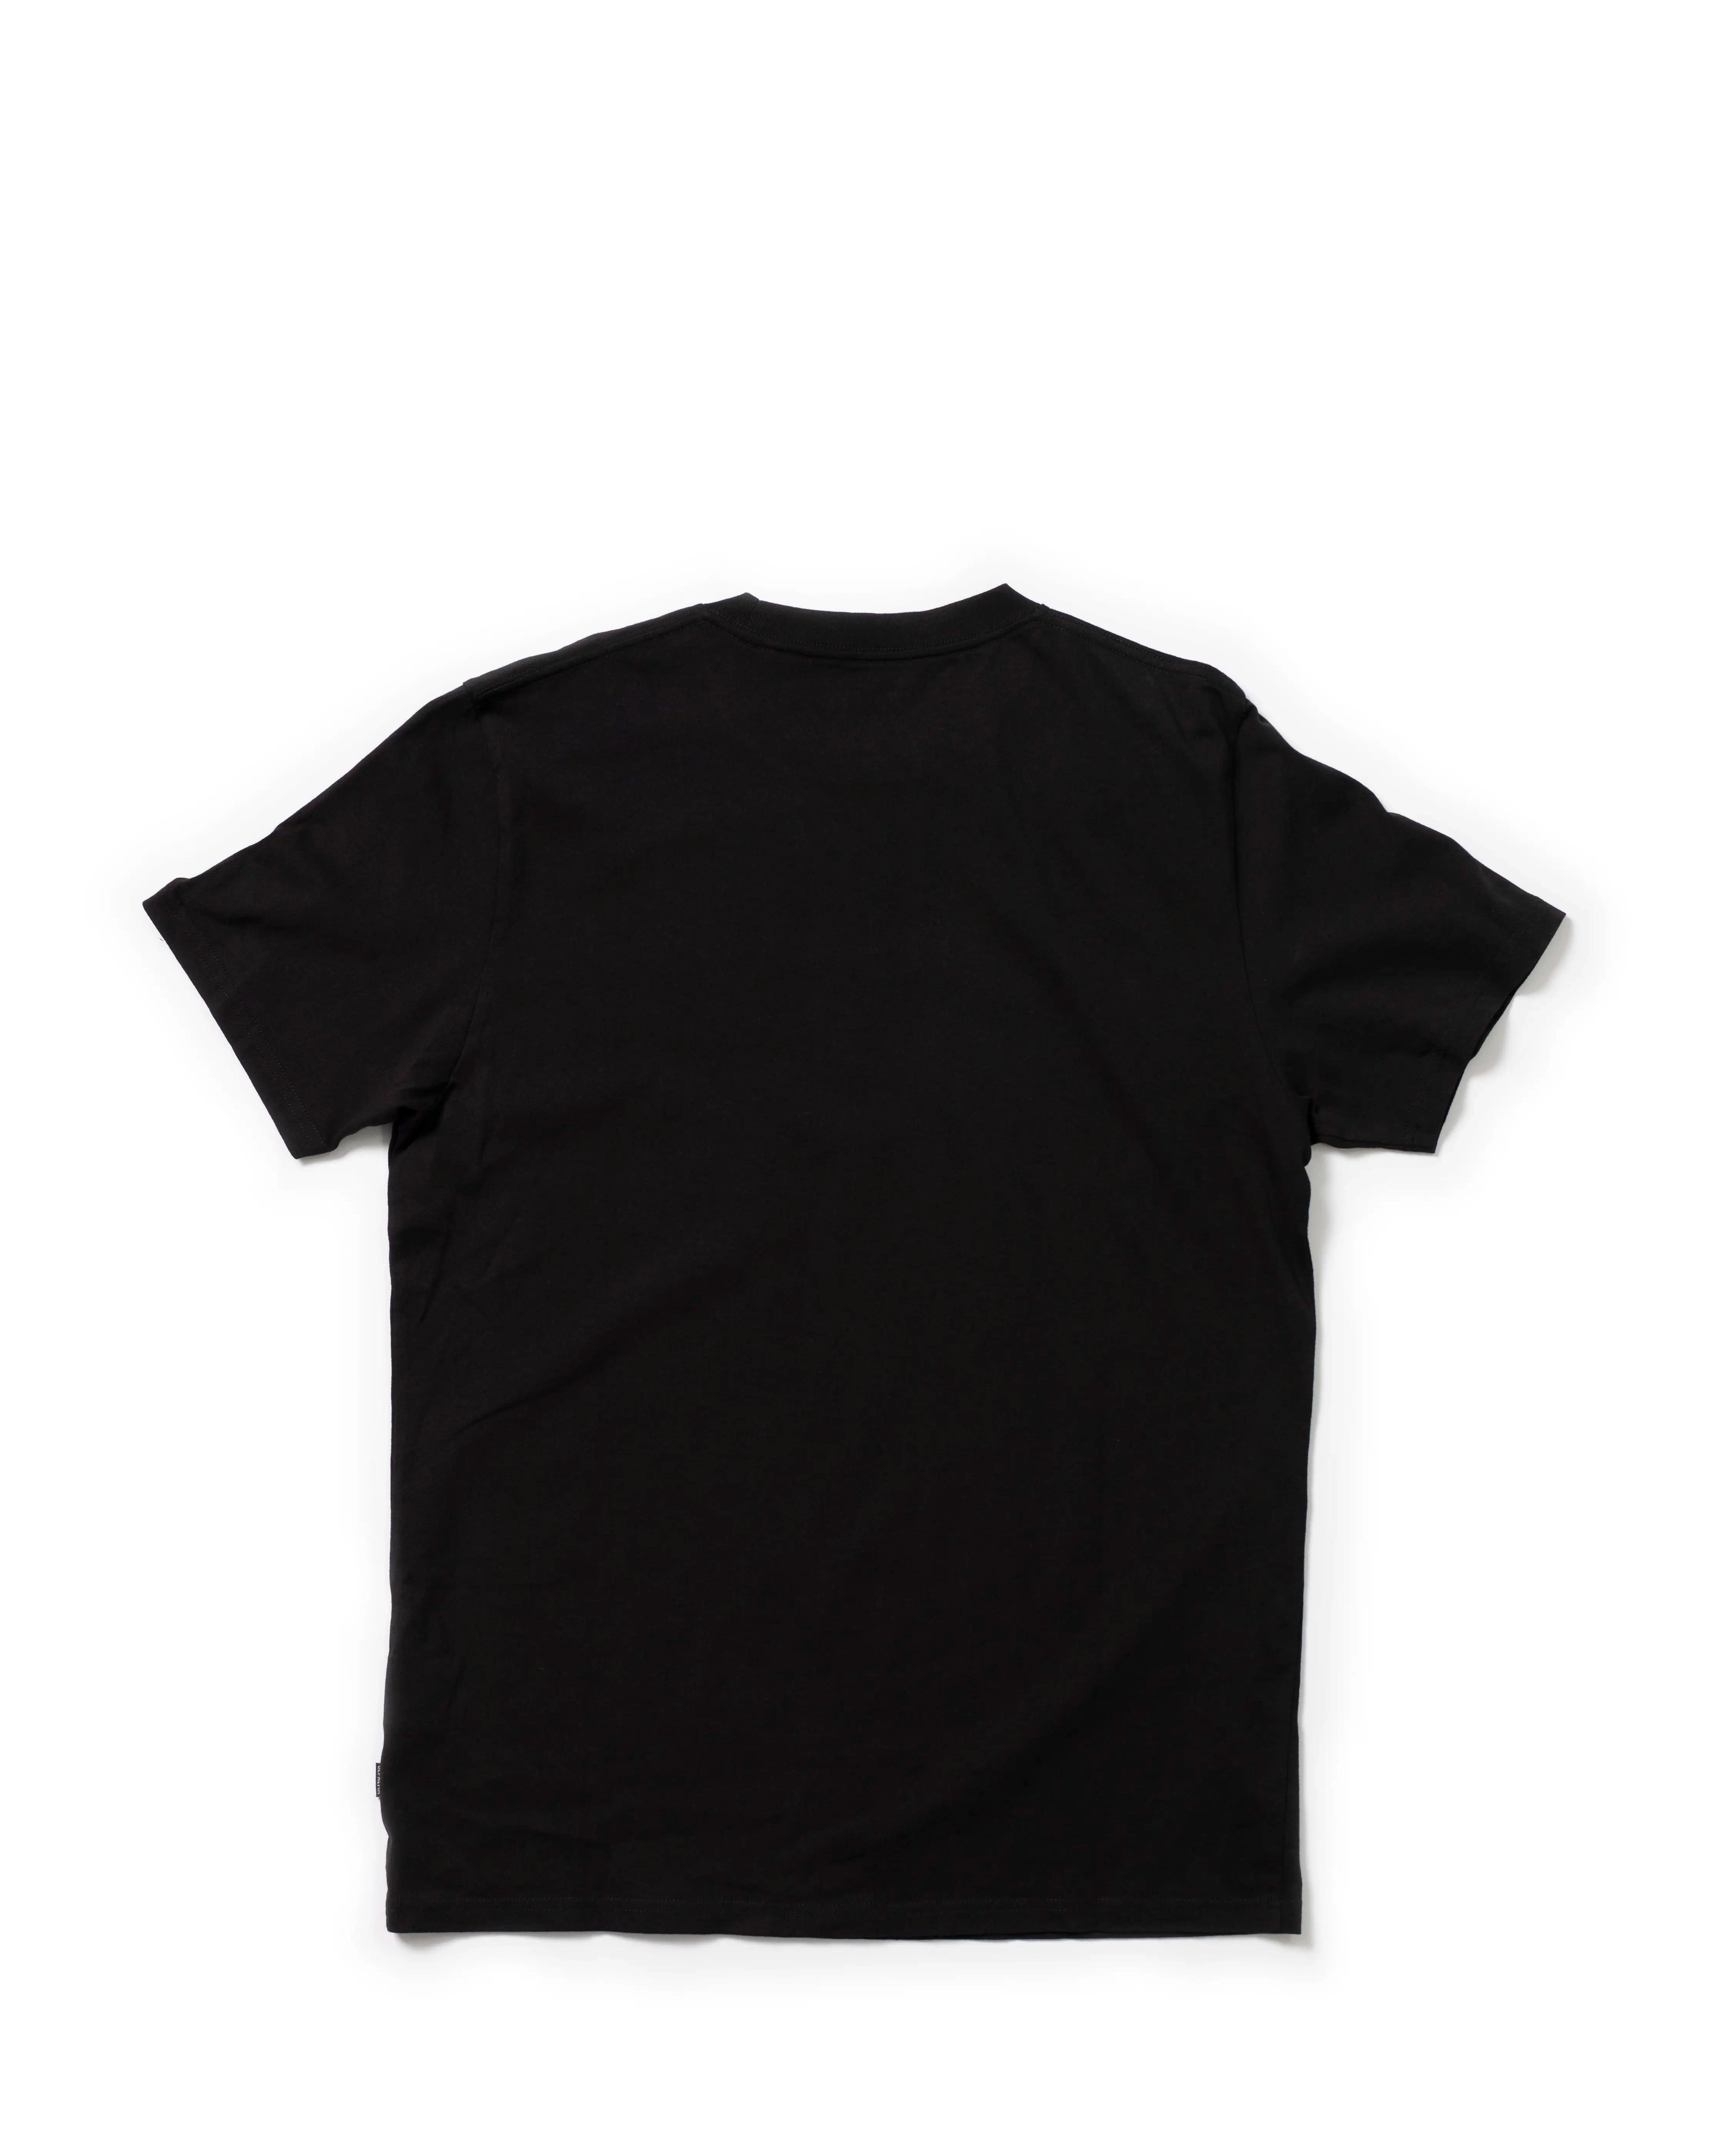 Photo of OG Skull & Arrows S/S T-shirt, Black